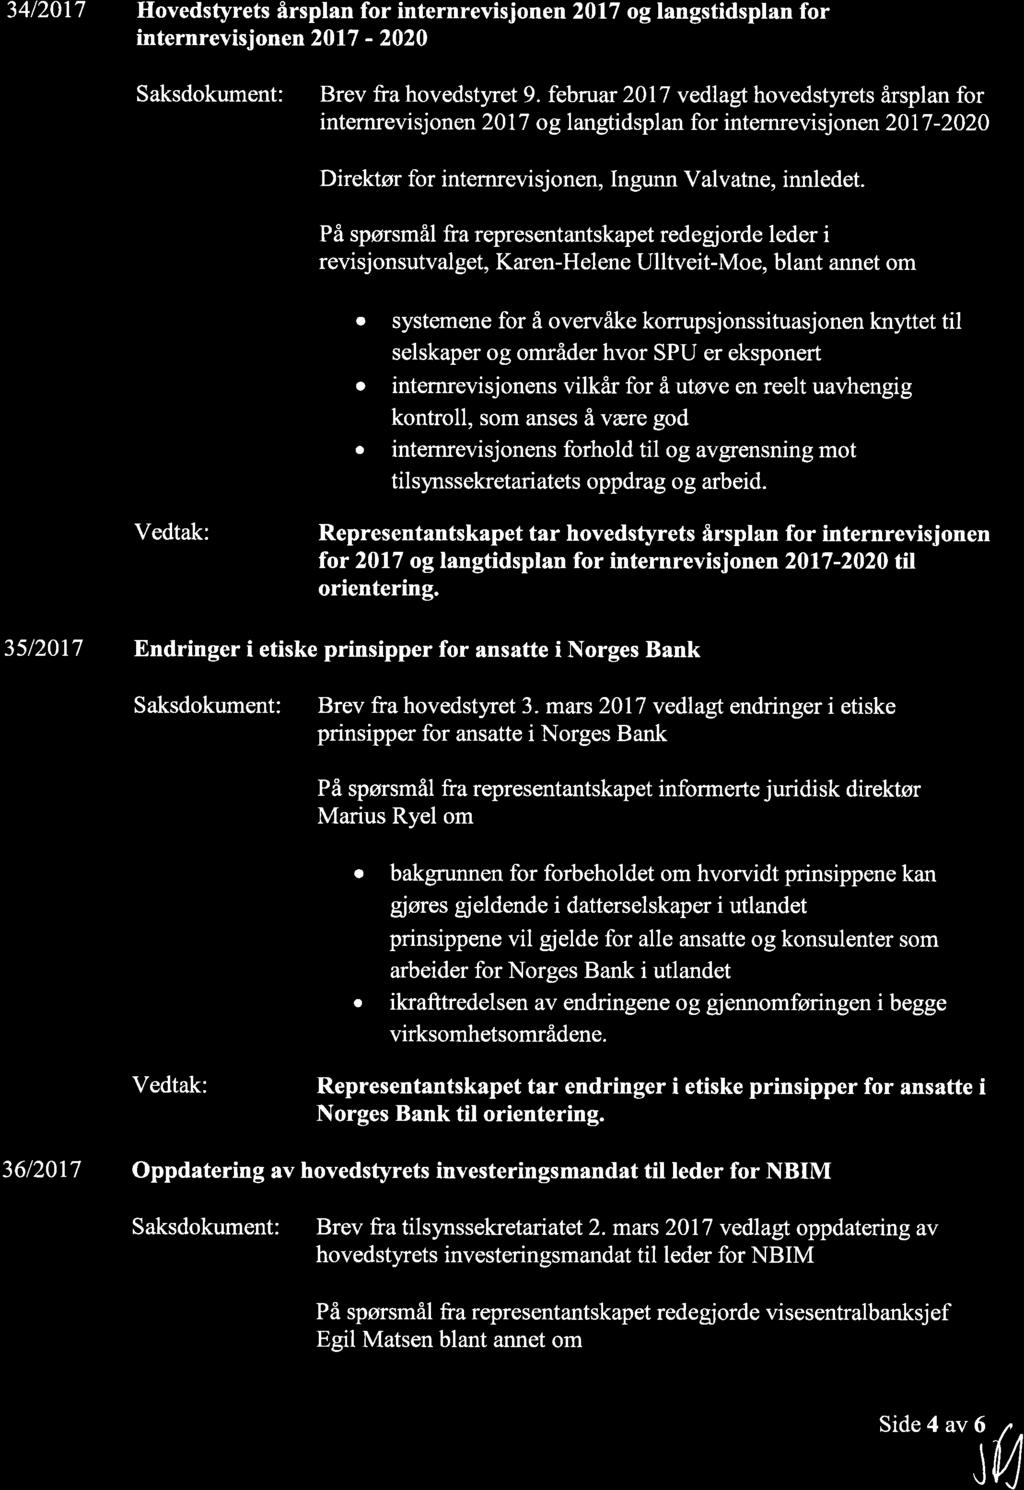 34/2017 Hovedstyrets årspln for internrevisjonen 2017 oglngstidspln for internrevisjonen 2Ol7-2020 Sksdokument: Brev fr hovedstyret 9.